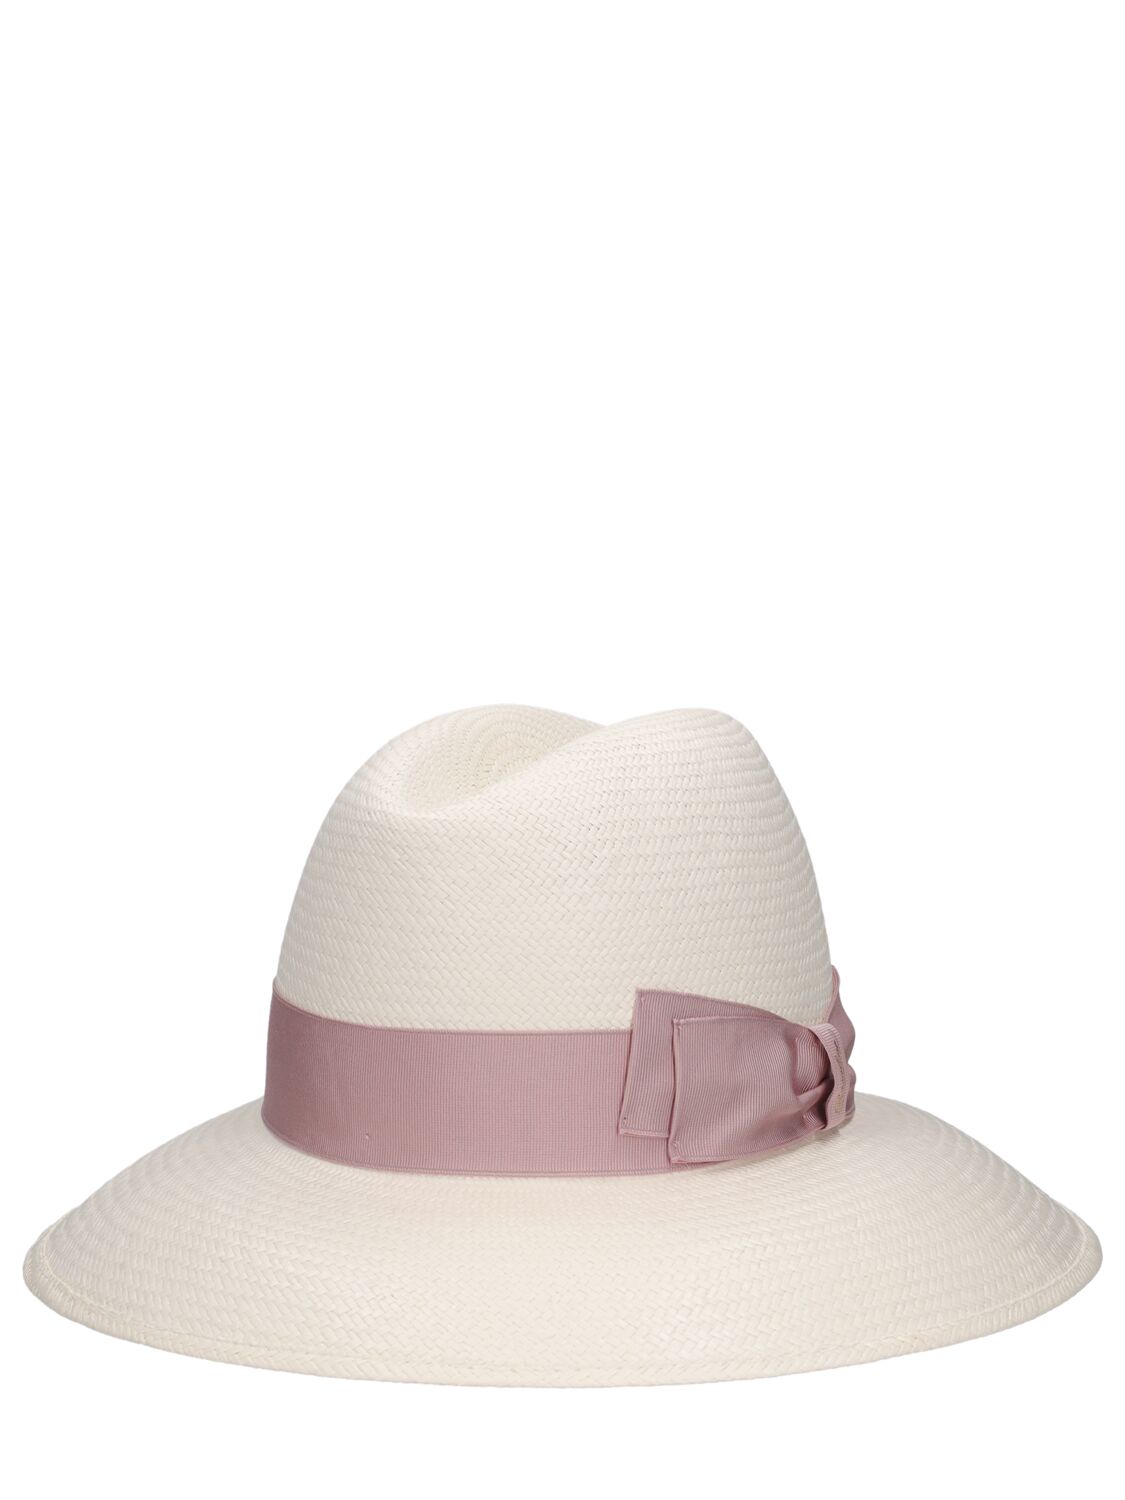 Shop Borsalino Claudette Fine Straw Panama Hat In White,ortensia